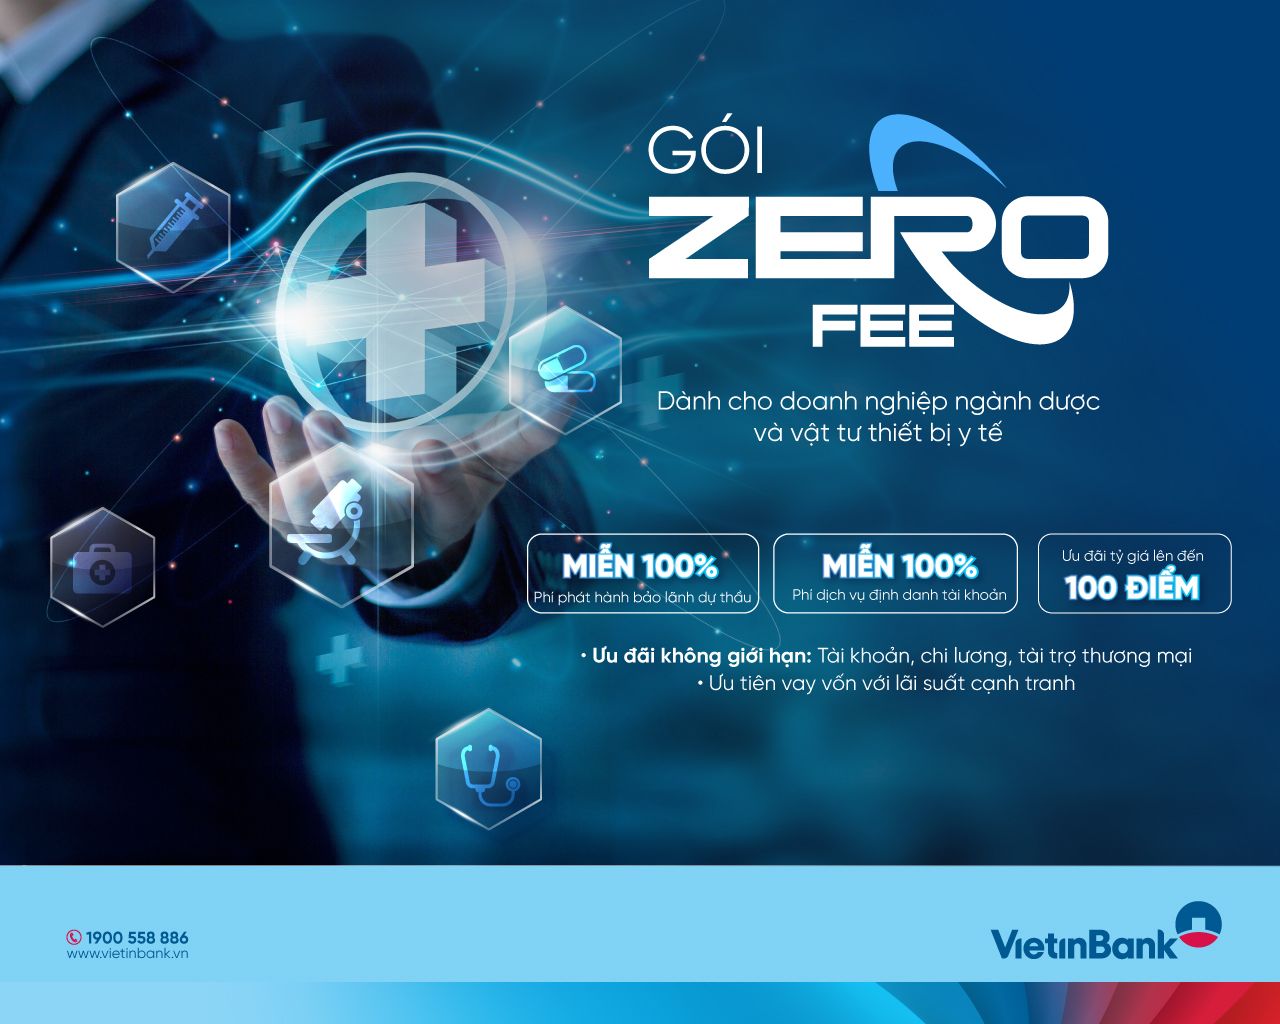 VietinBank tung gói ưu đãi phí “Zero Fee” dành cho doanh nghiệp ngành dược